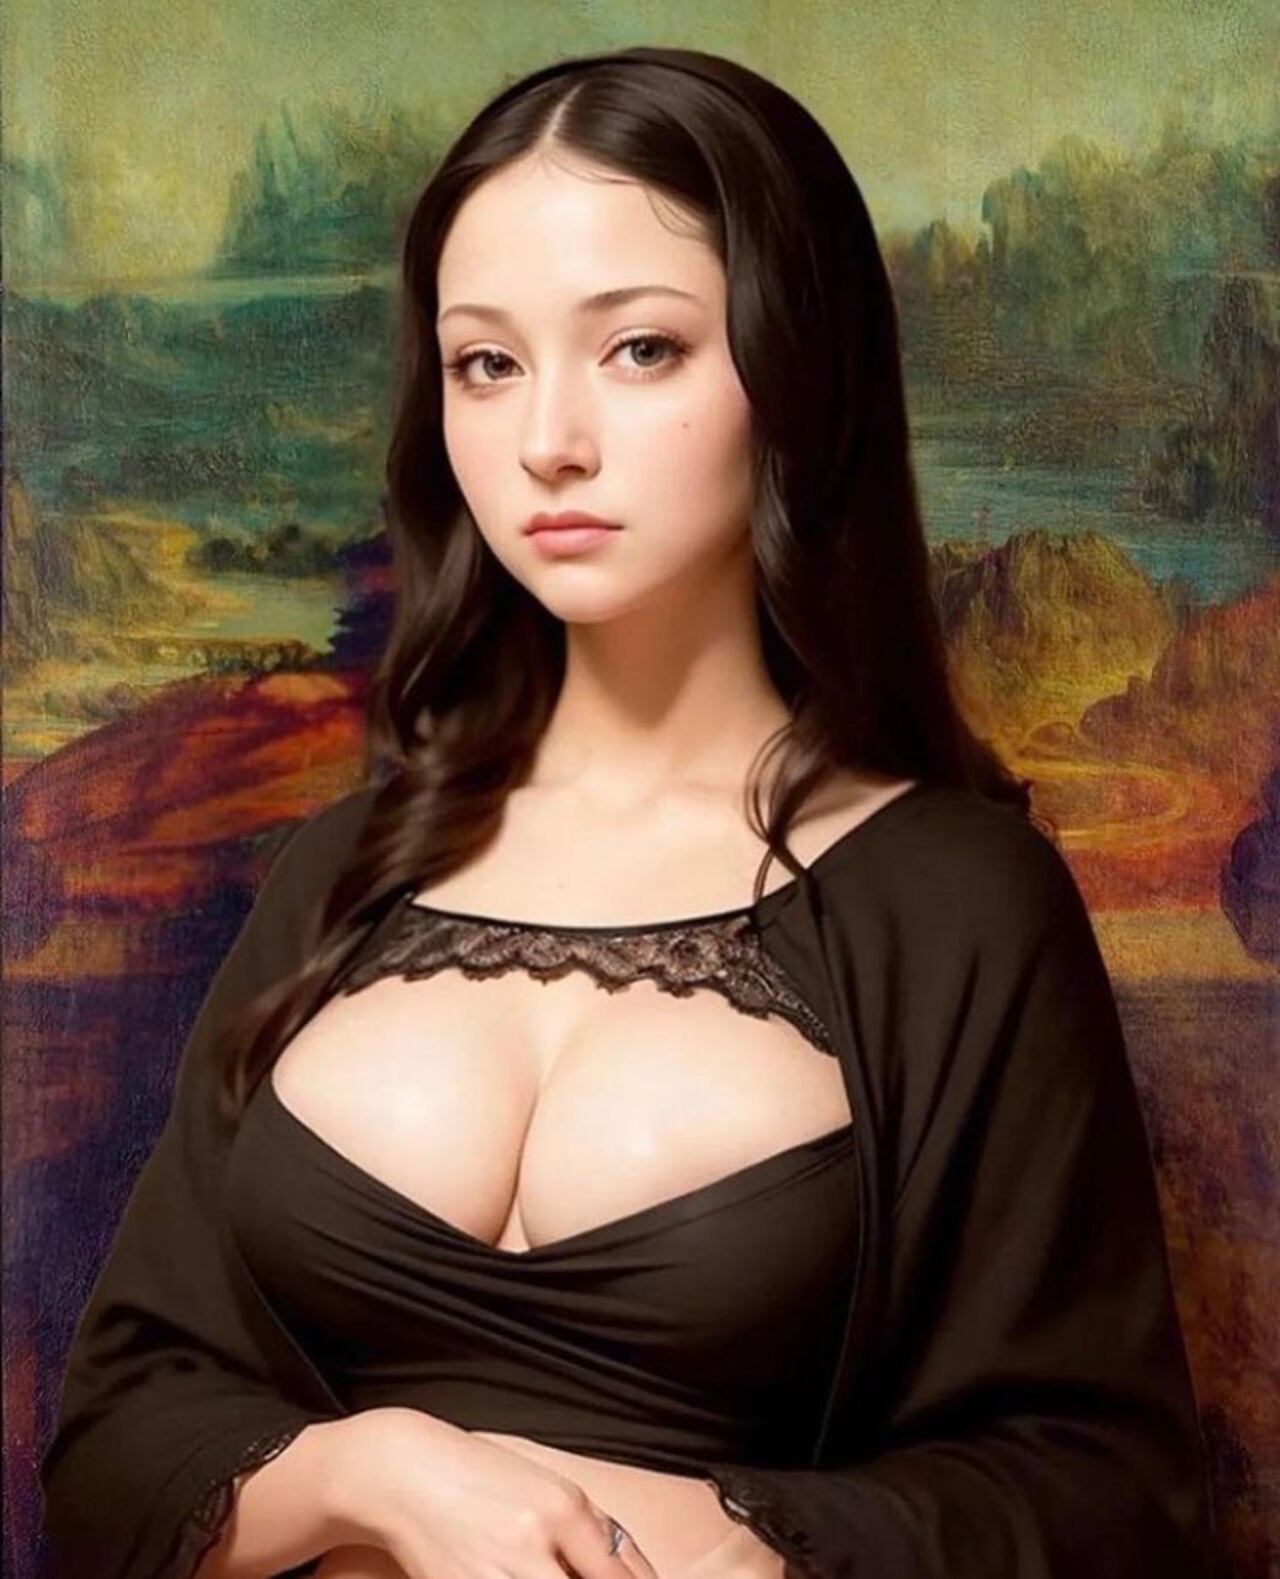 En Twitter se hizo viral una imagen creada por IA que muestra cómo se vería la Mona Lisa si estuviera viva.